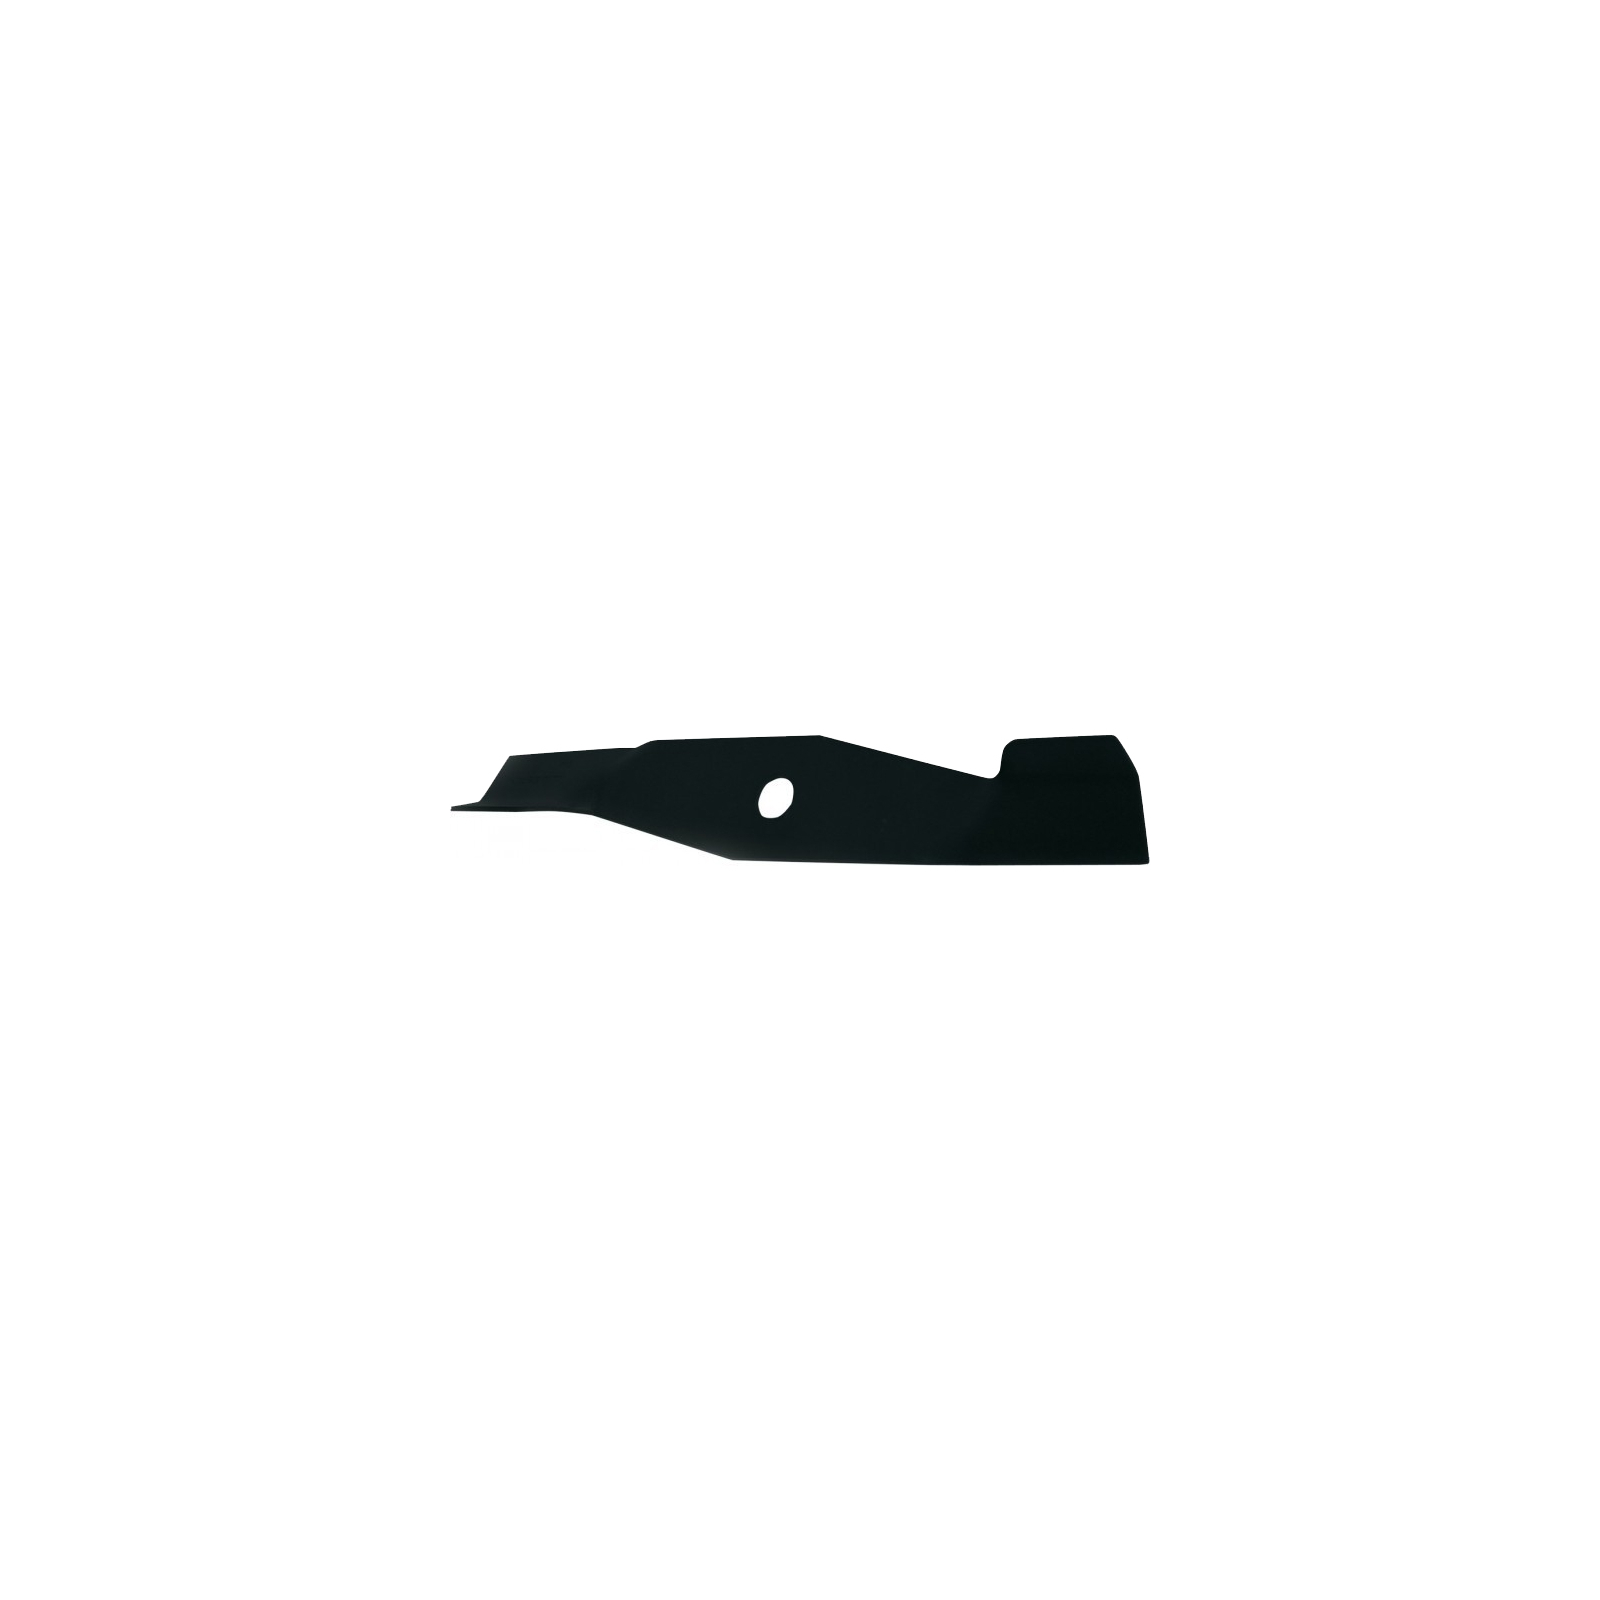 Нож для газонокосилки AL-KO Silver 40E Comfort, сталь (463915)